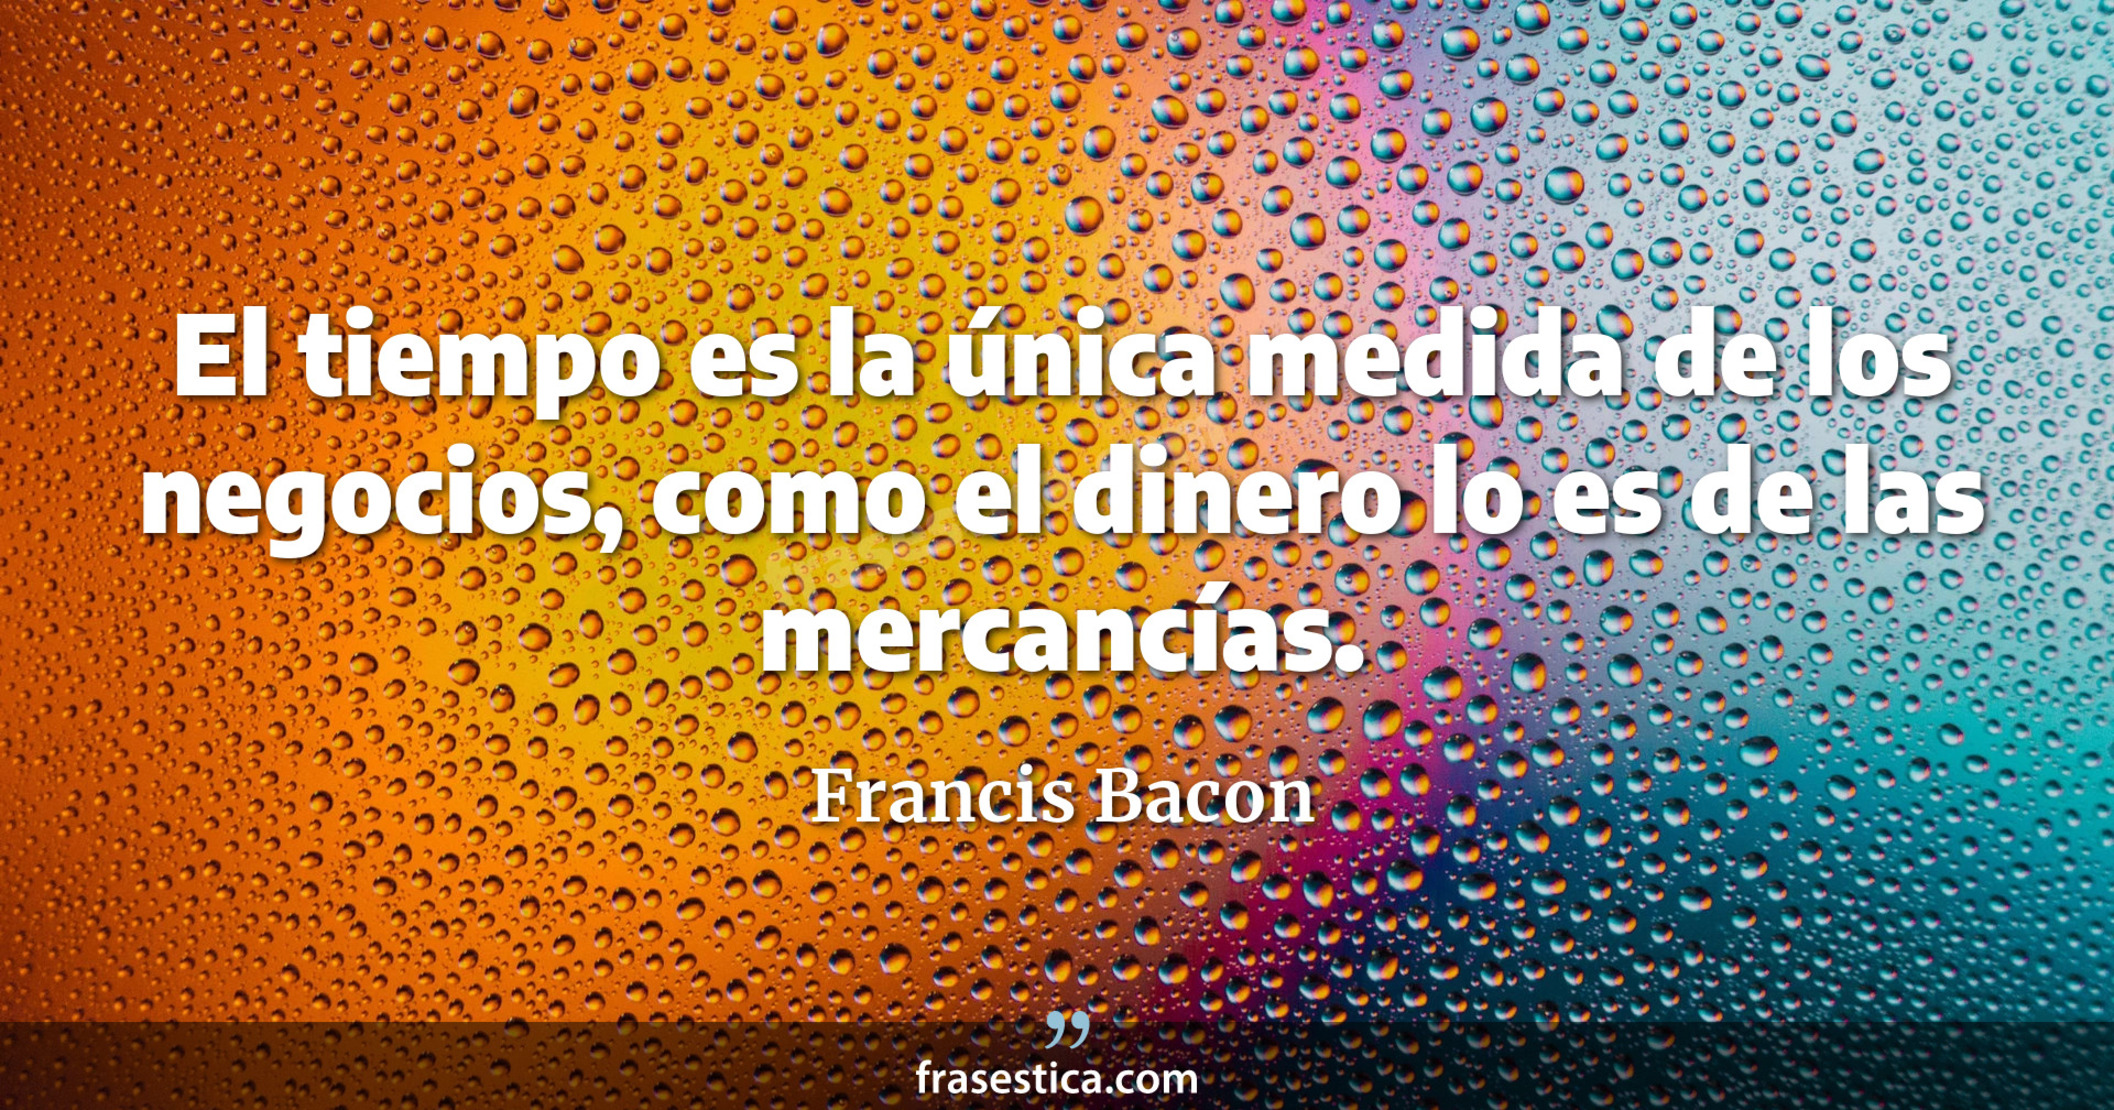 El tiempo es la única medida de los negocios, como el dinero lo es de las mercancías. - Francis Bacon